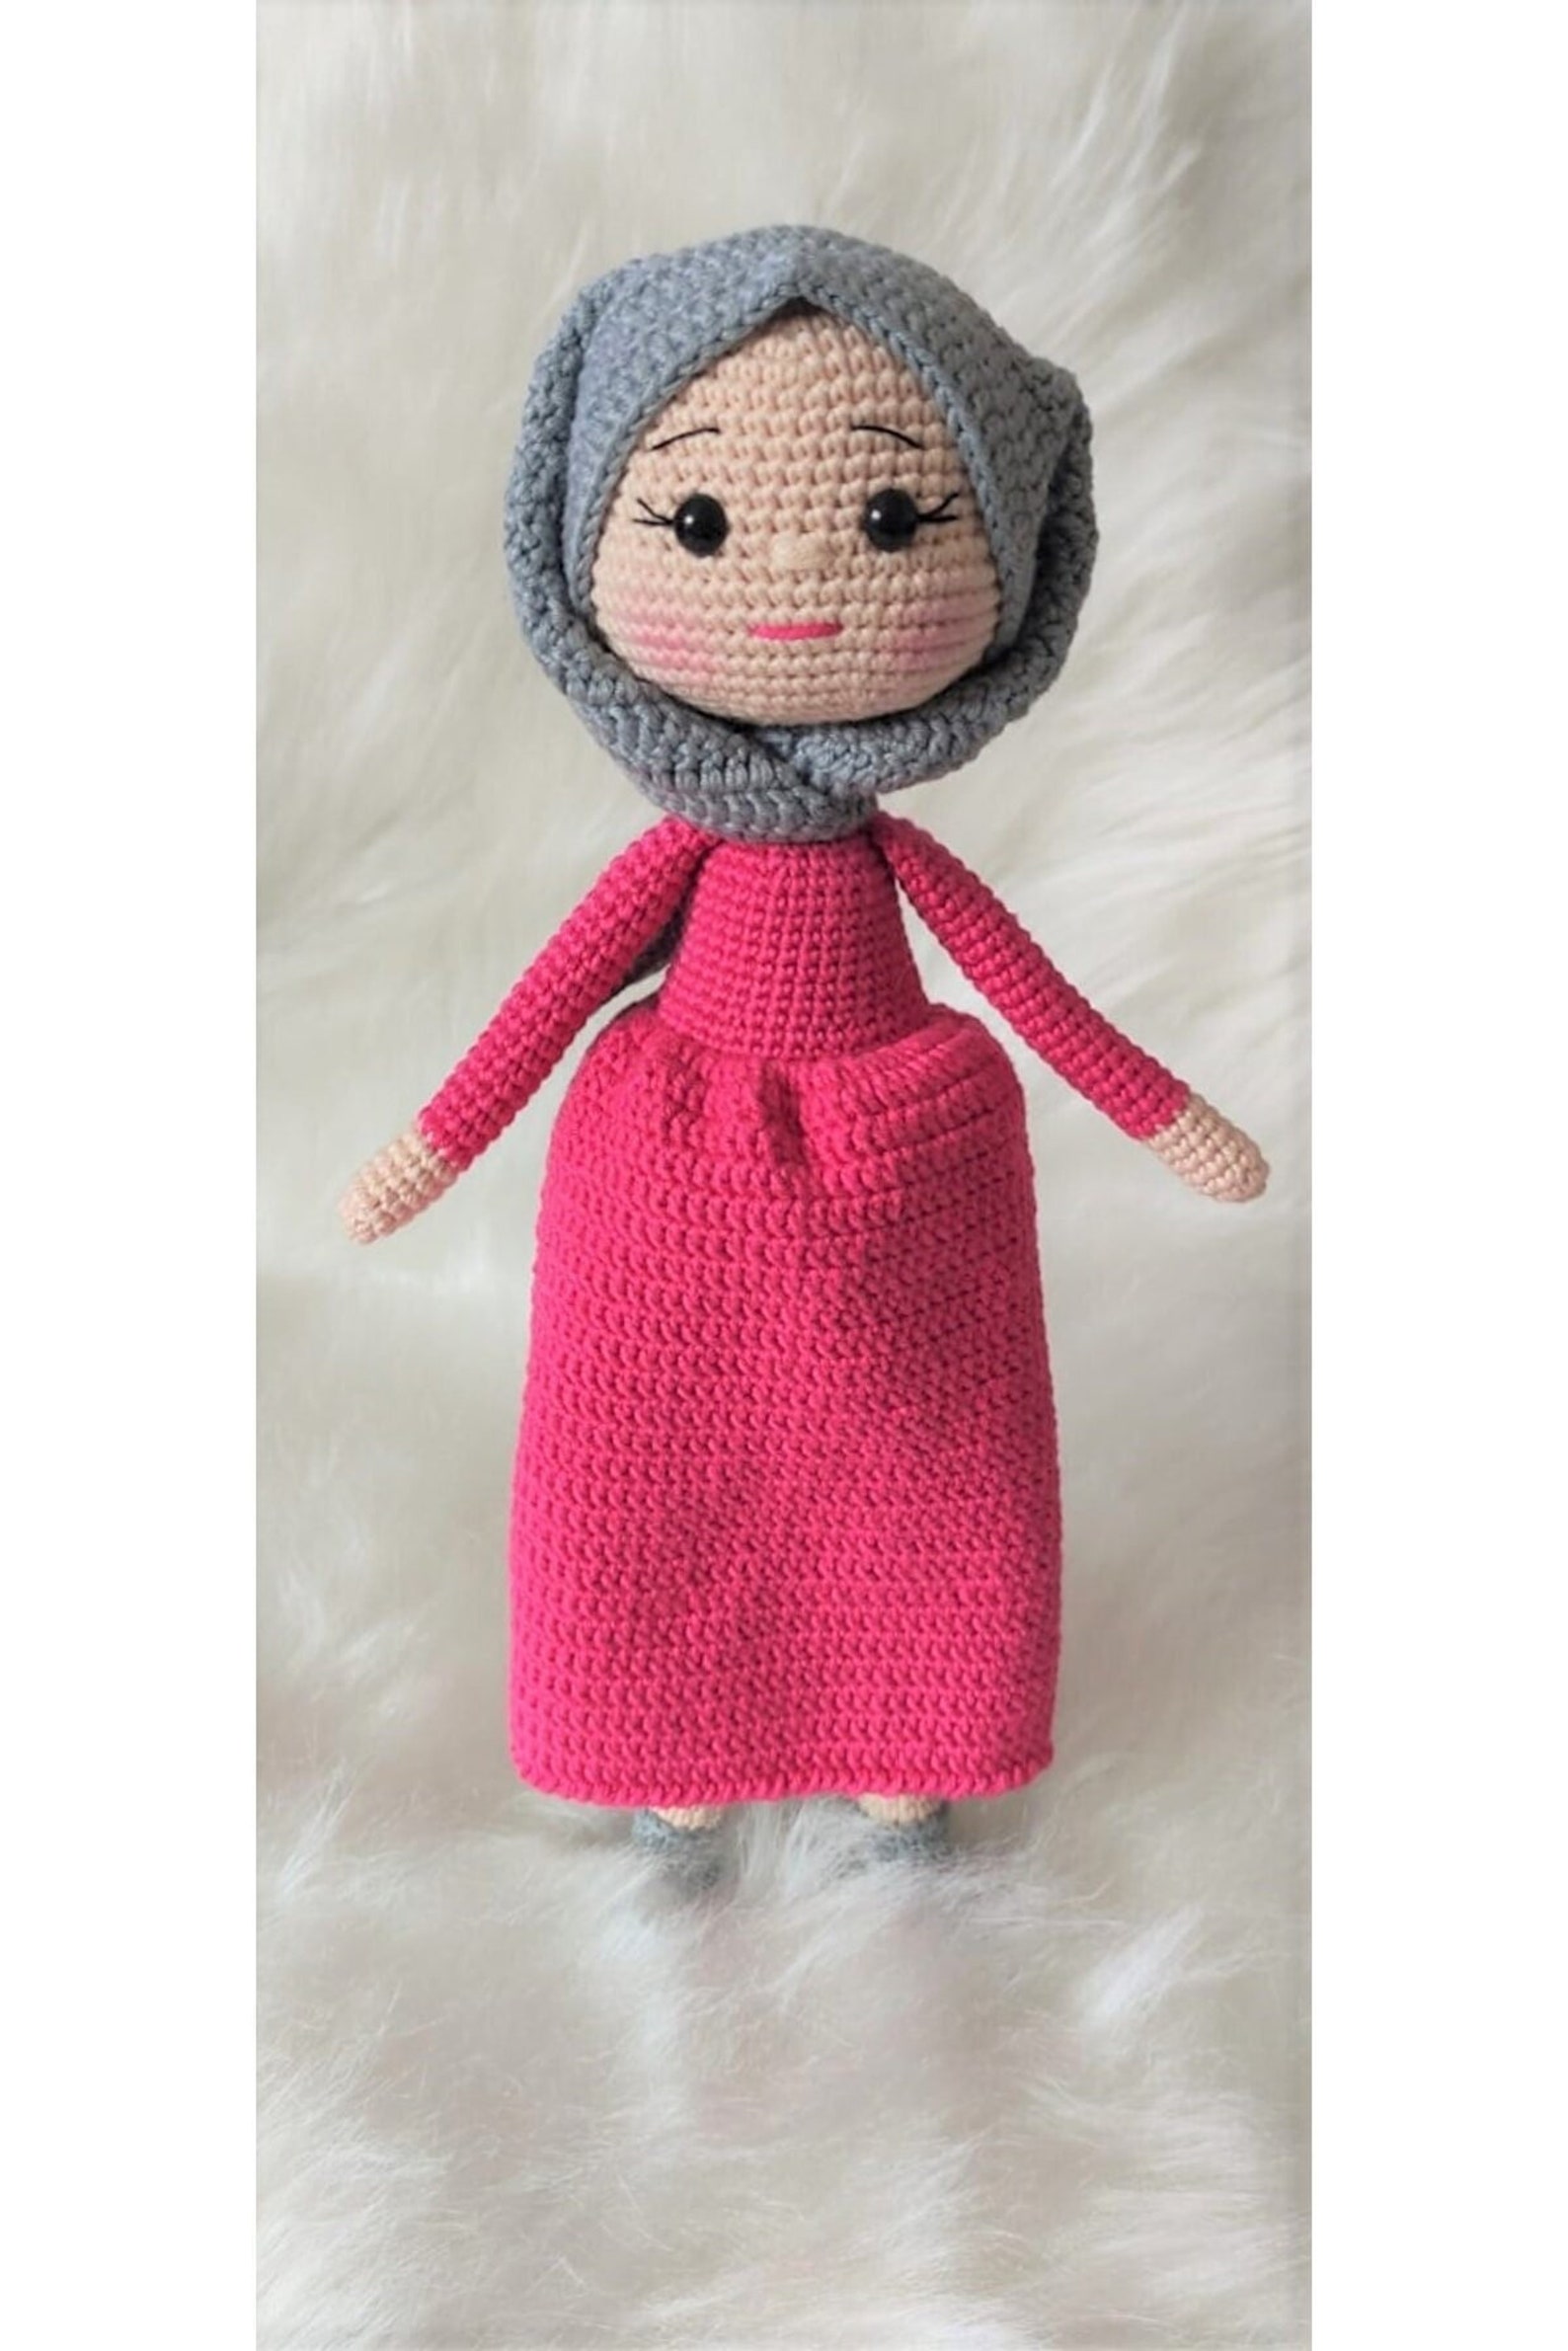 Crochet Hijab Doll Amigurumi Muslim Doll Doll In Hijab Etsy 